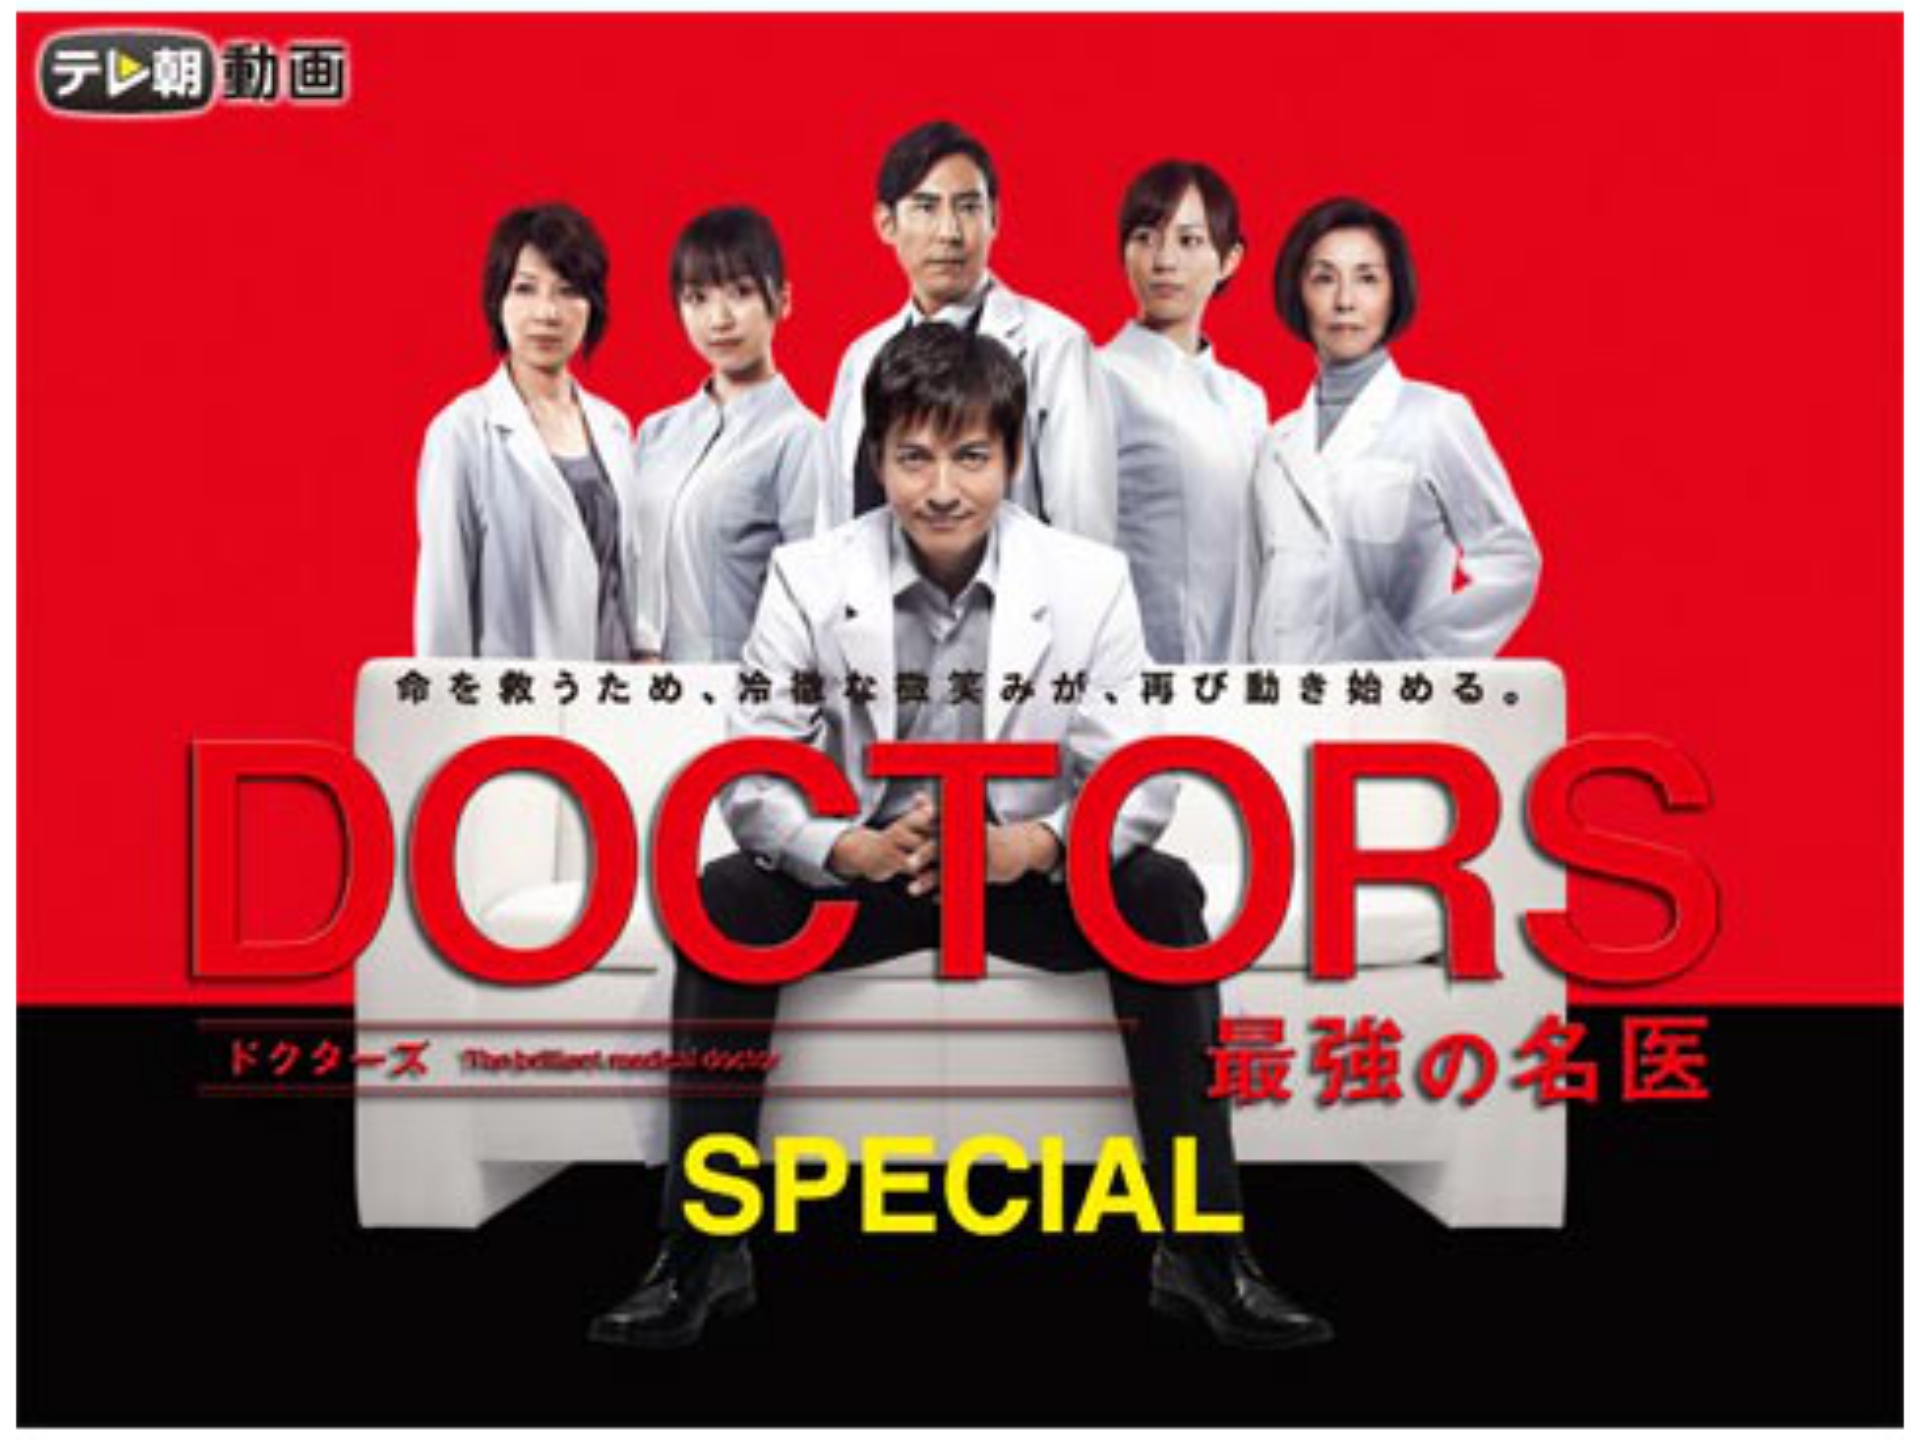 ドラマ Doctors 最強の名医 Special の動画 初月無料 動画配信サービスのビデオマーケット